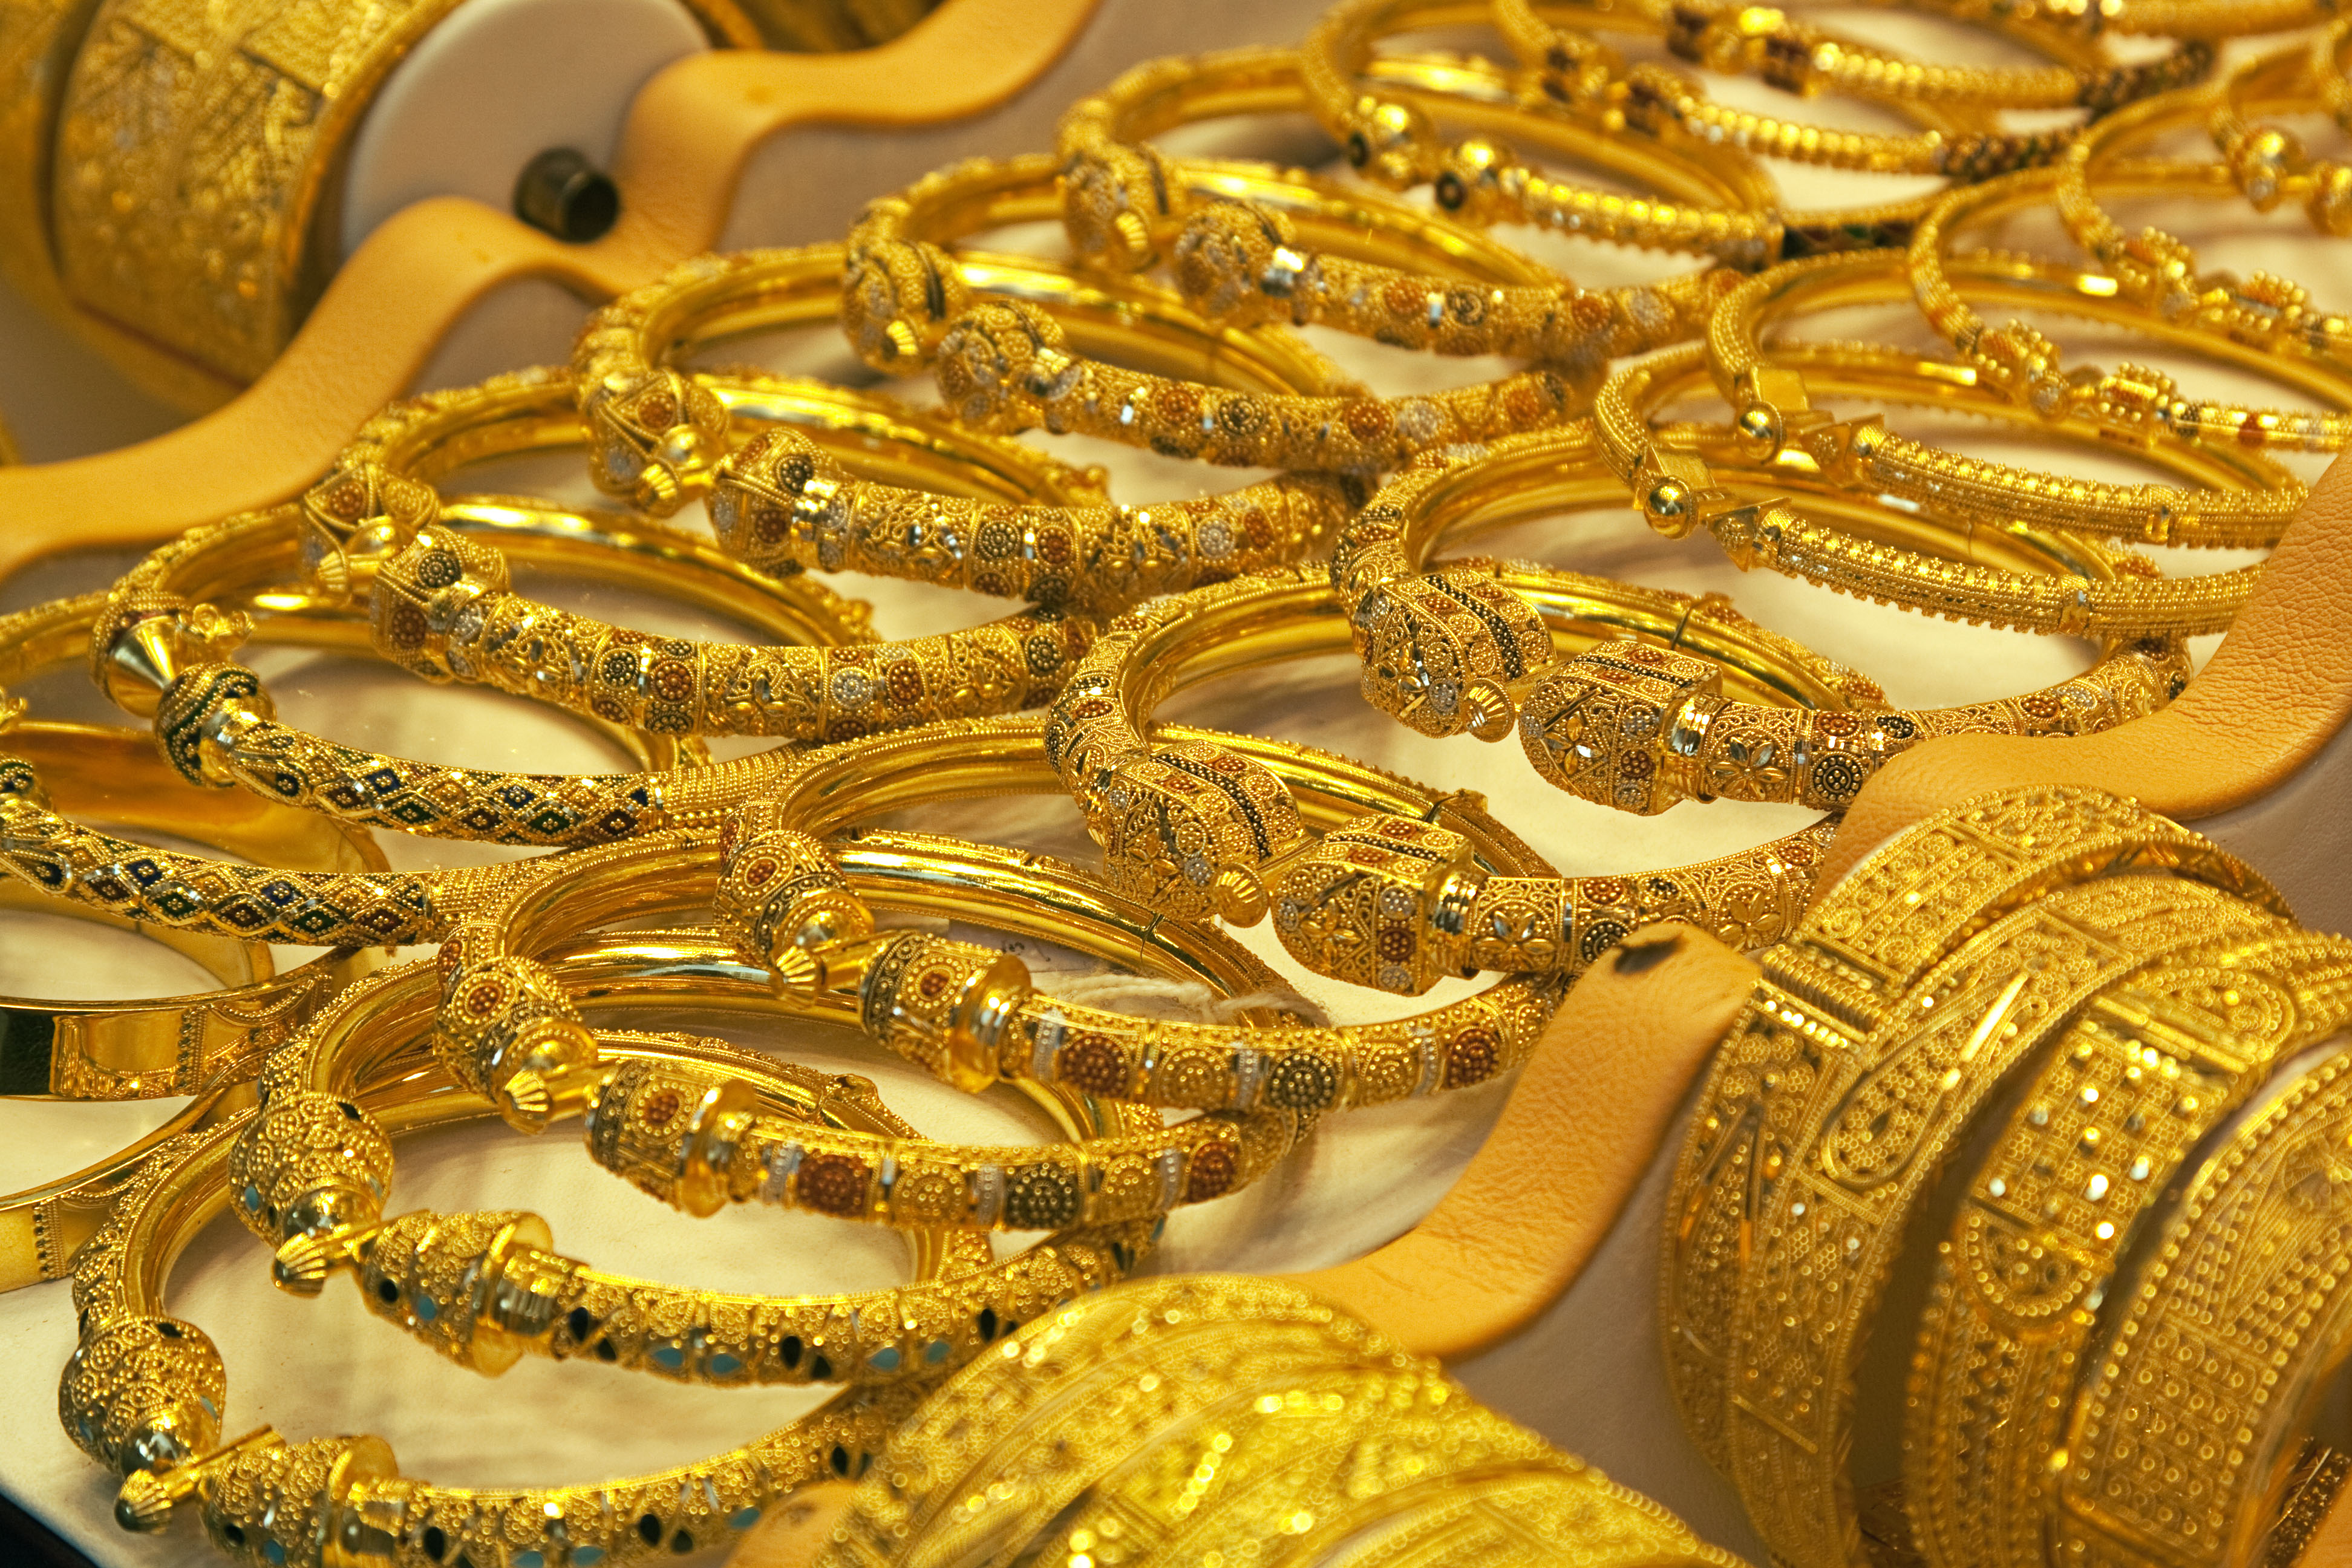 Dubai Gold Souk - Shopping in Dubai | Novotel World Trade Centre Dubai